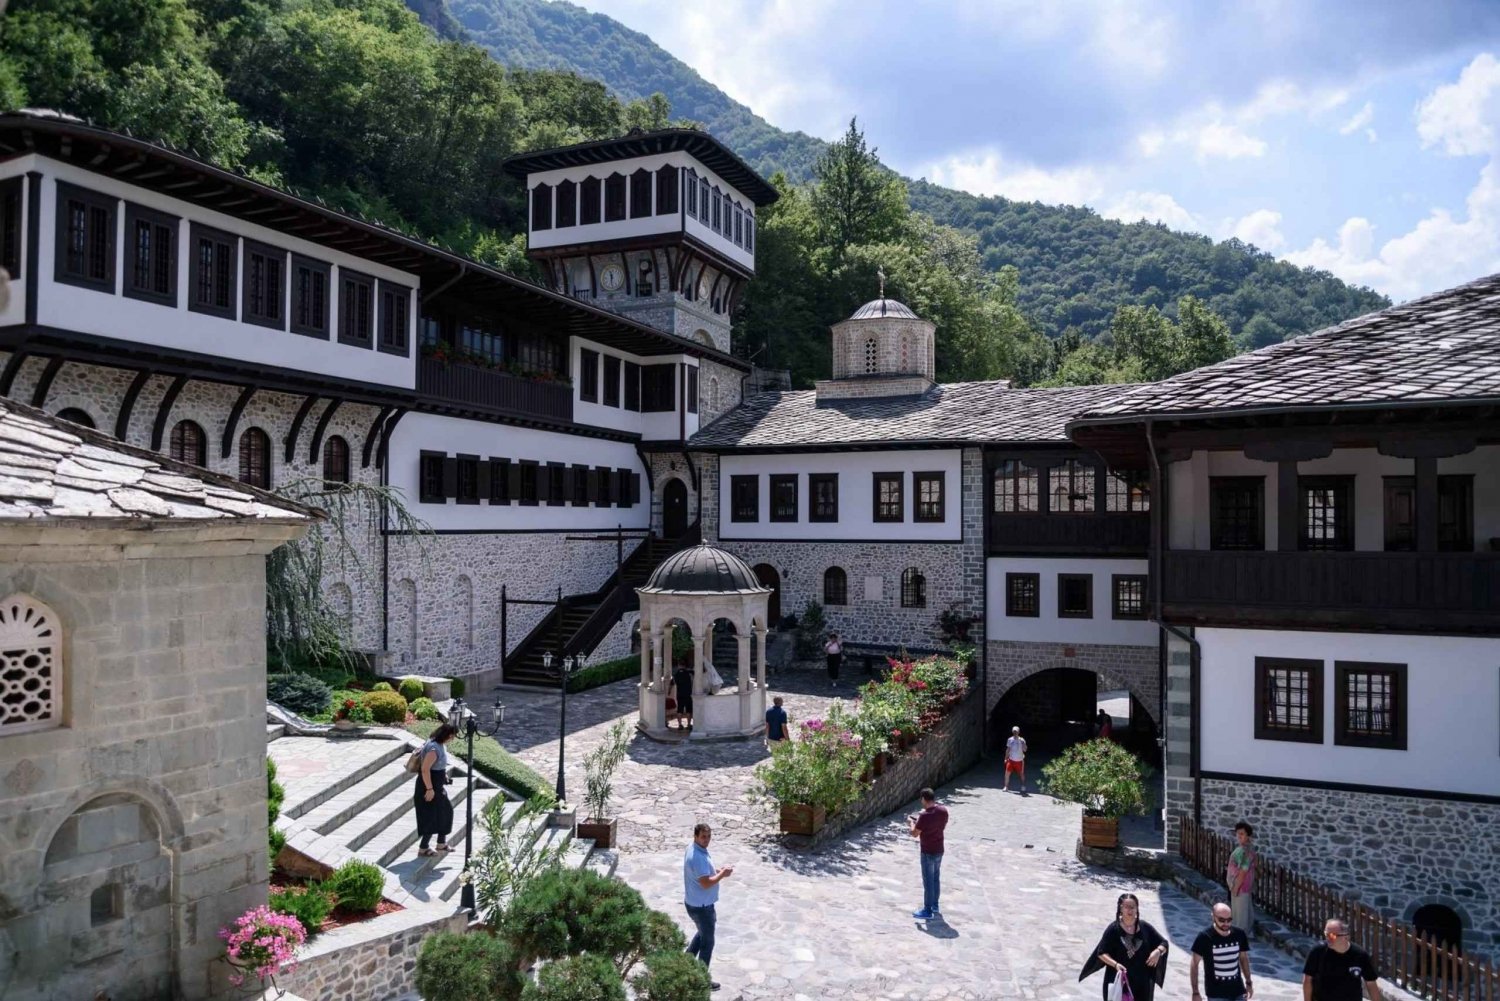 Bigorski Monastery and Duff Waterfalls from Ohrid